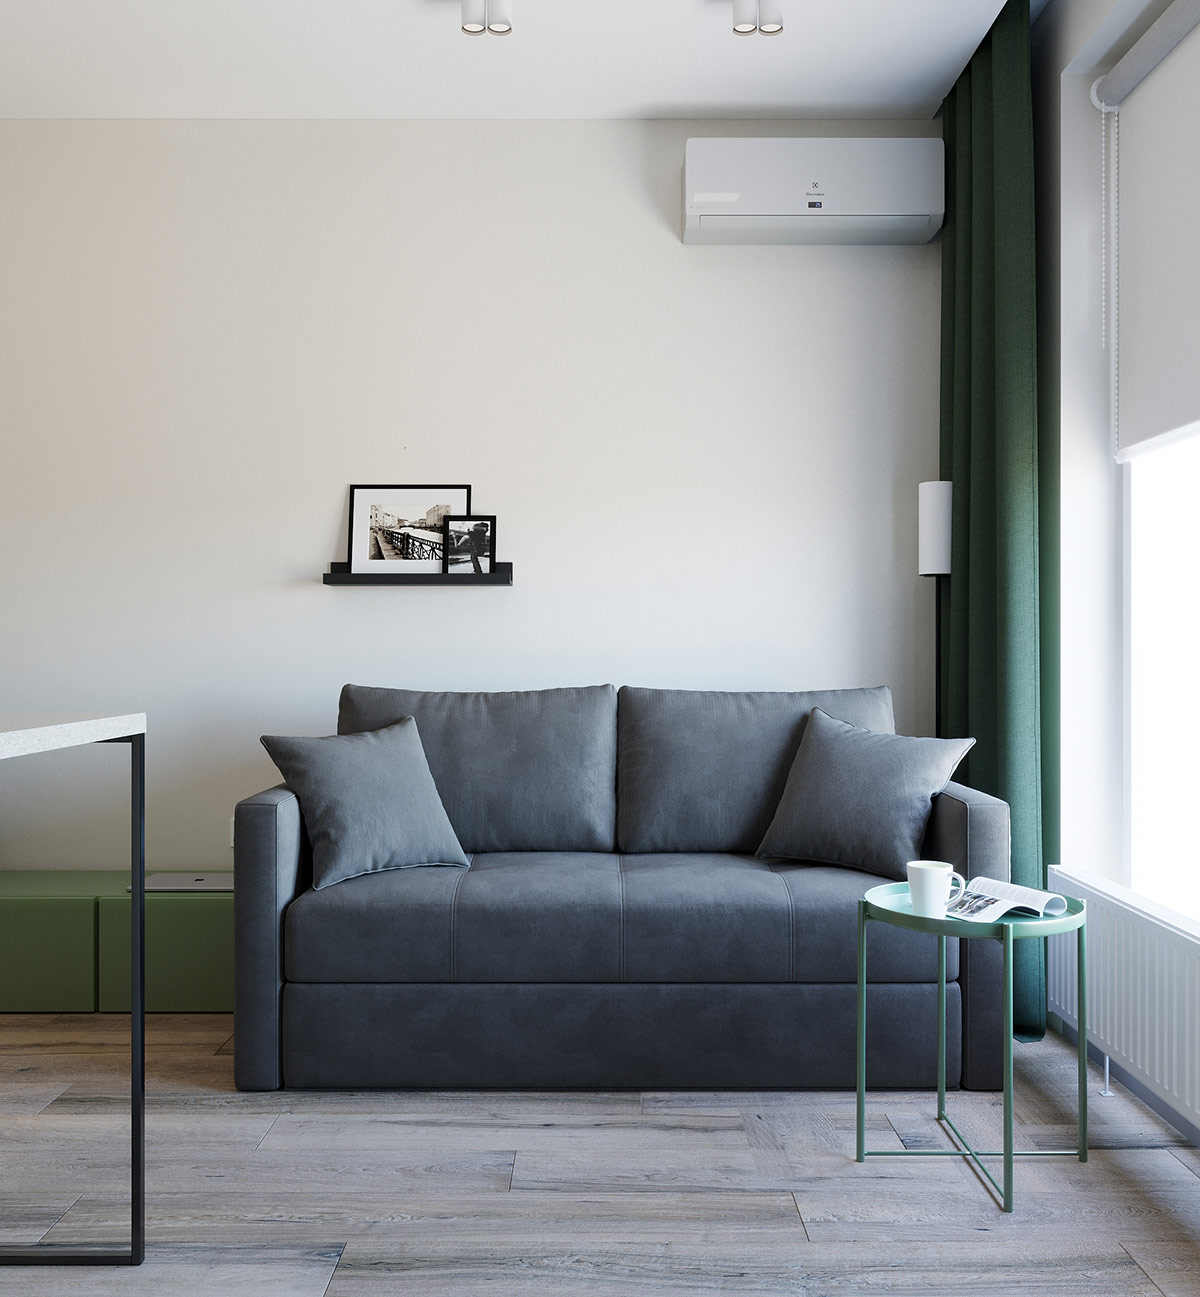 Phòng khách căn hộ 39m2 được thiết kế với tông màu trắng sáng làm phông nền chính tạo cảm giác rộng mở, tươi mới hơn cho căn phòng. Cùng với đó là những điểm nhấn màu xanh lá sinh động từ rèm cửa, bàn cà phê, kệ ngồi.